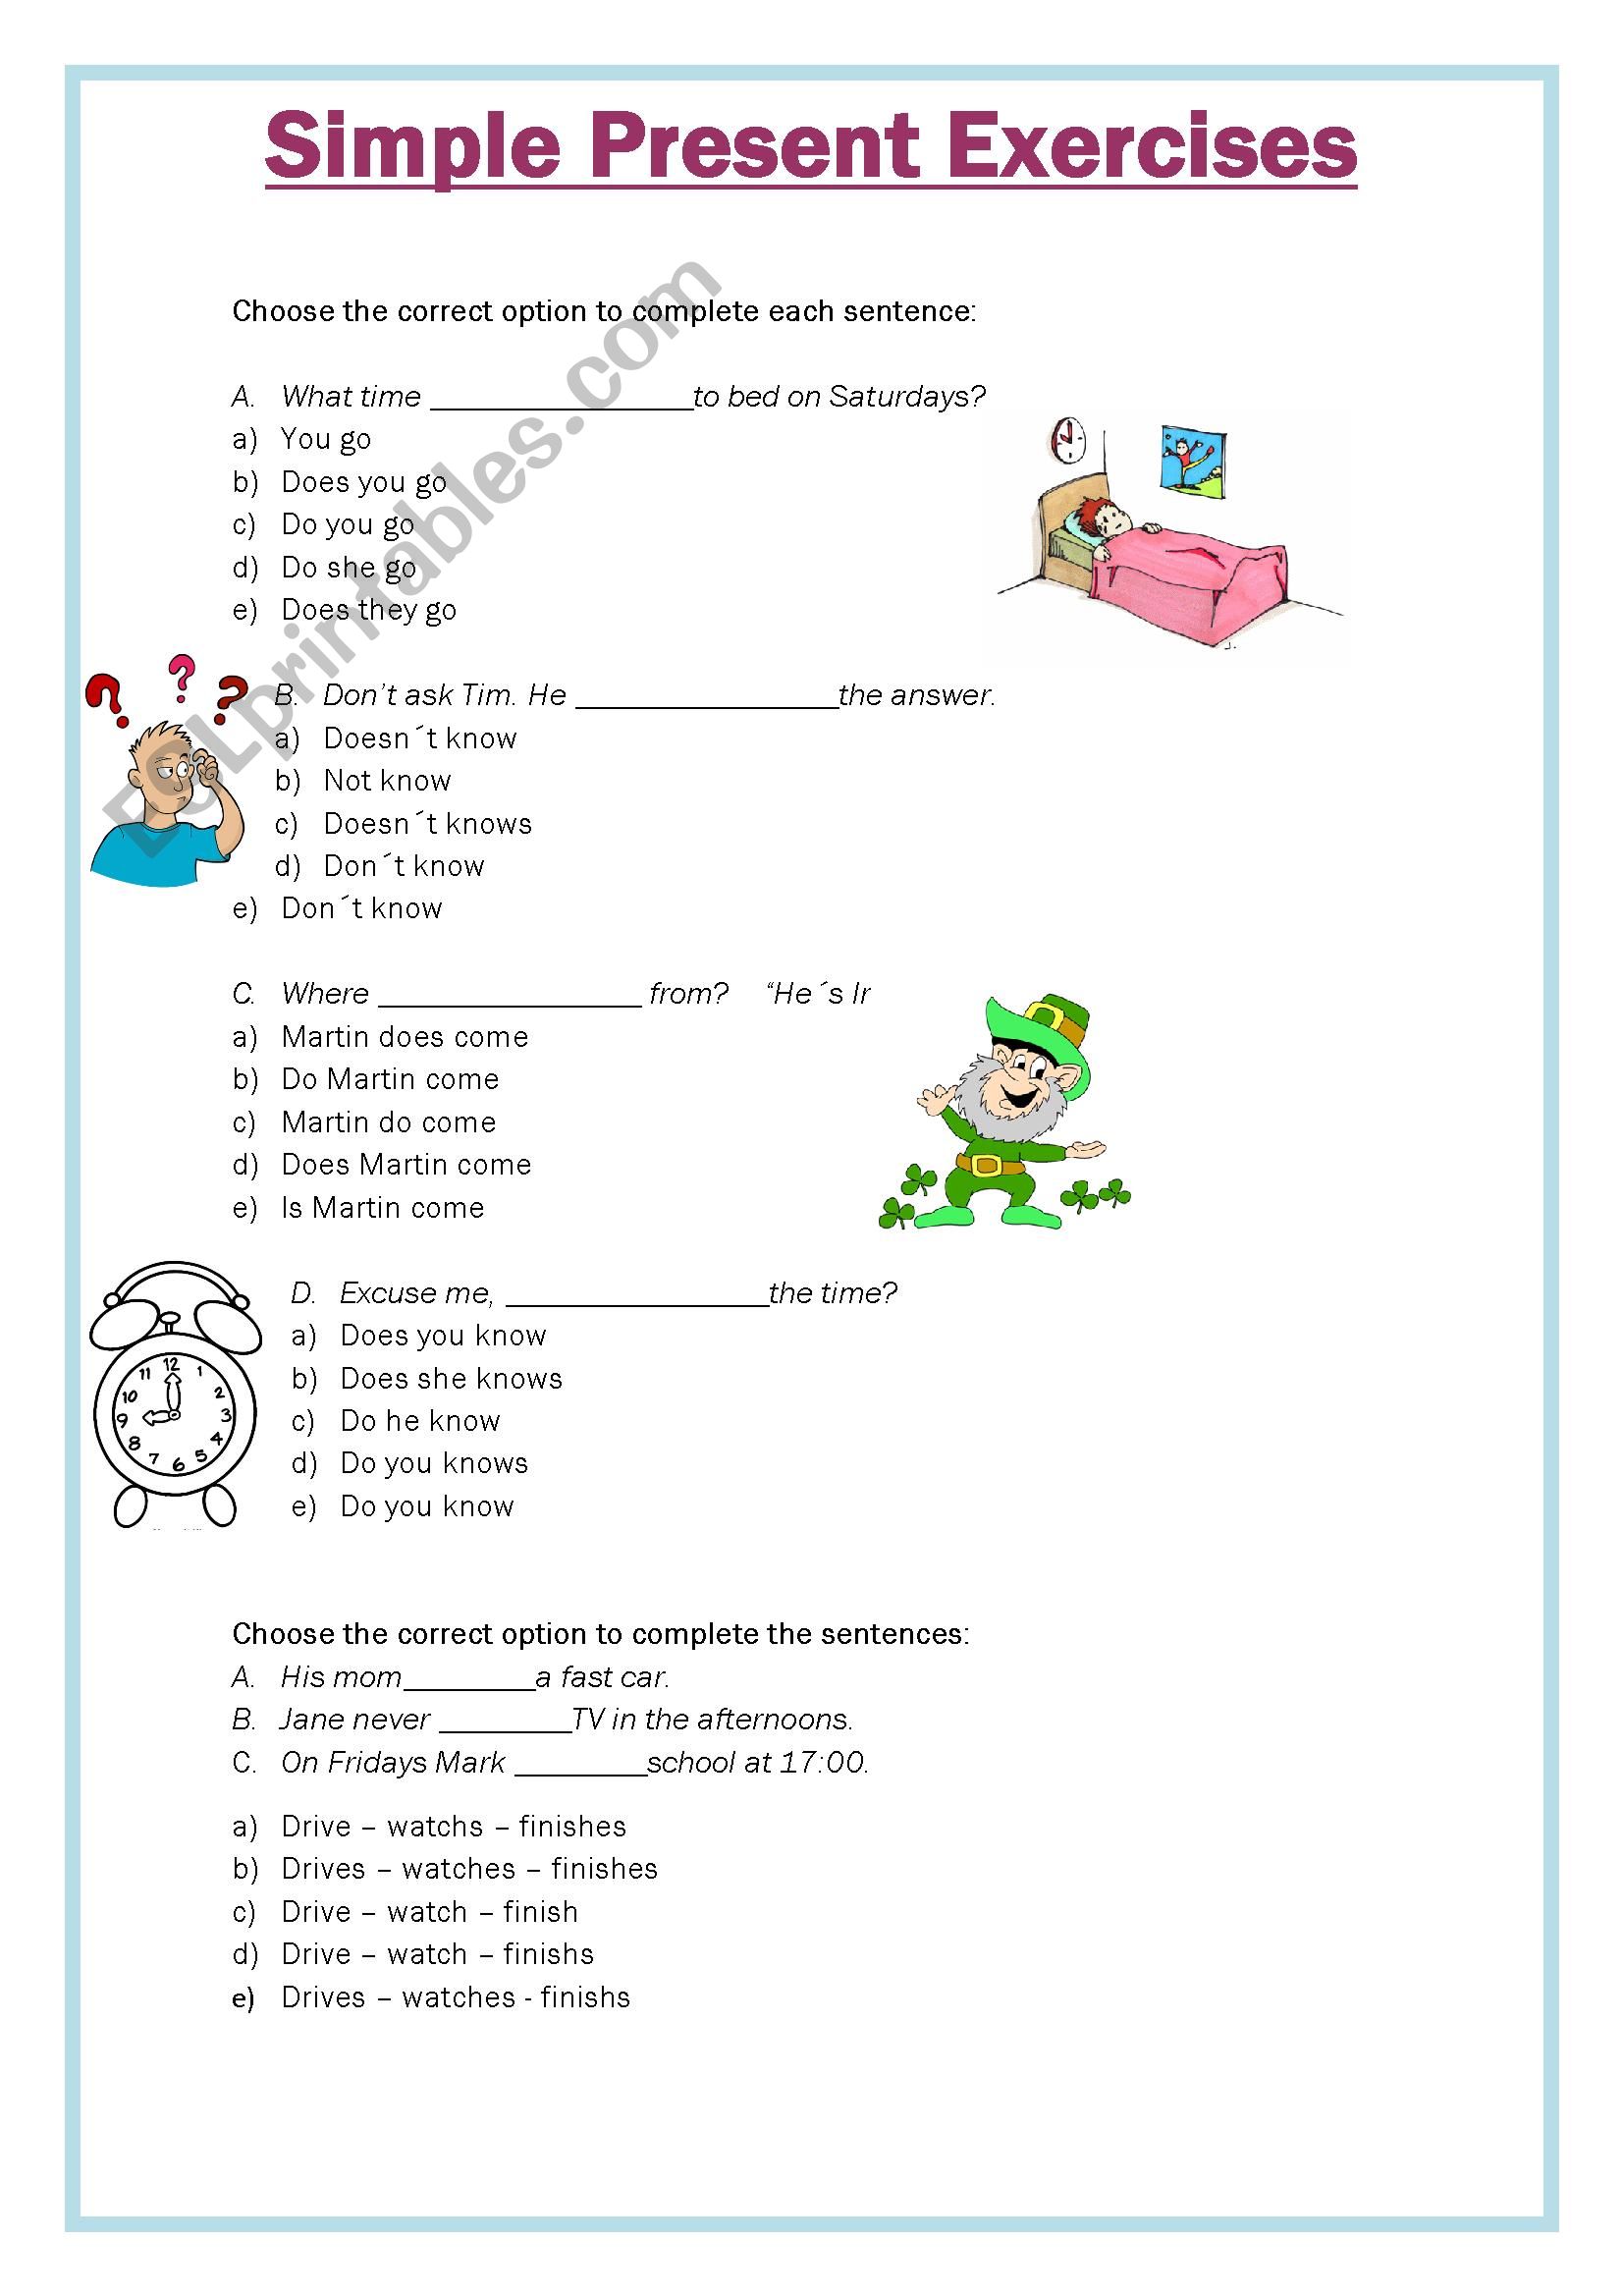 Simple Preset Exercises worksheet